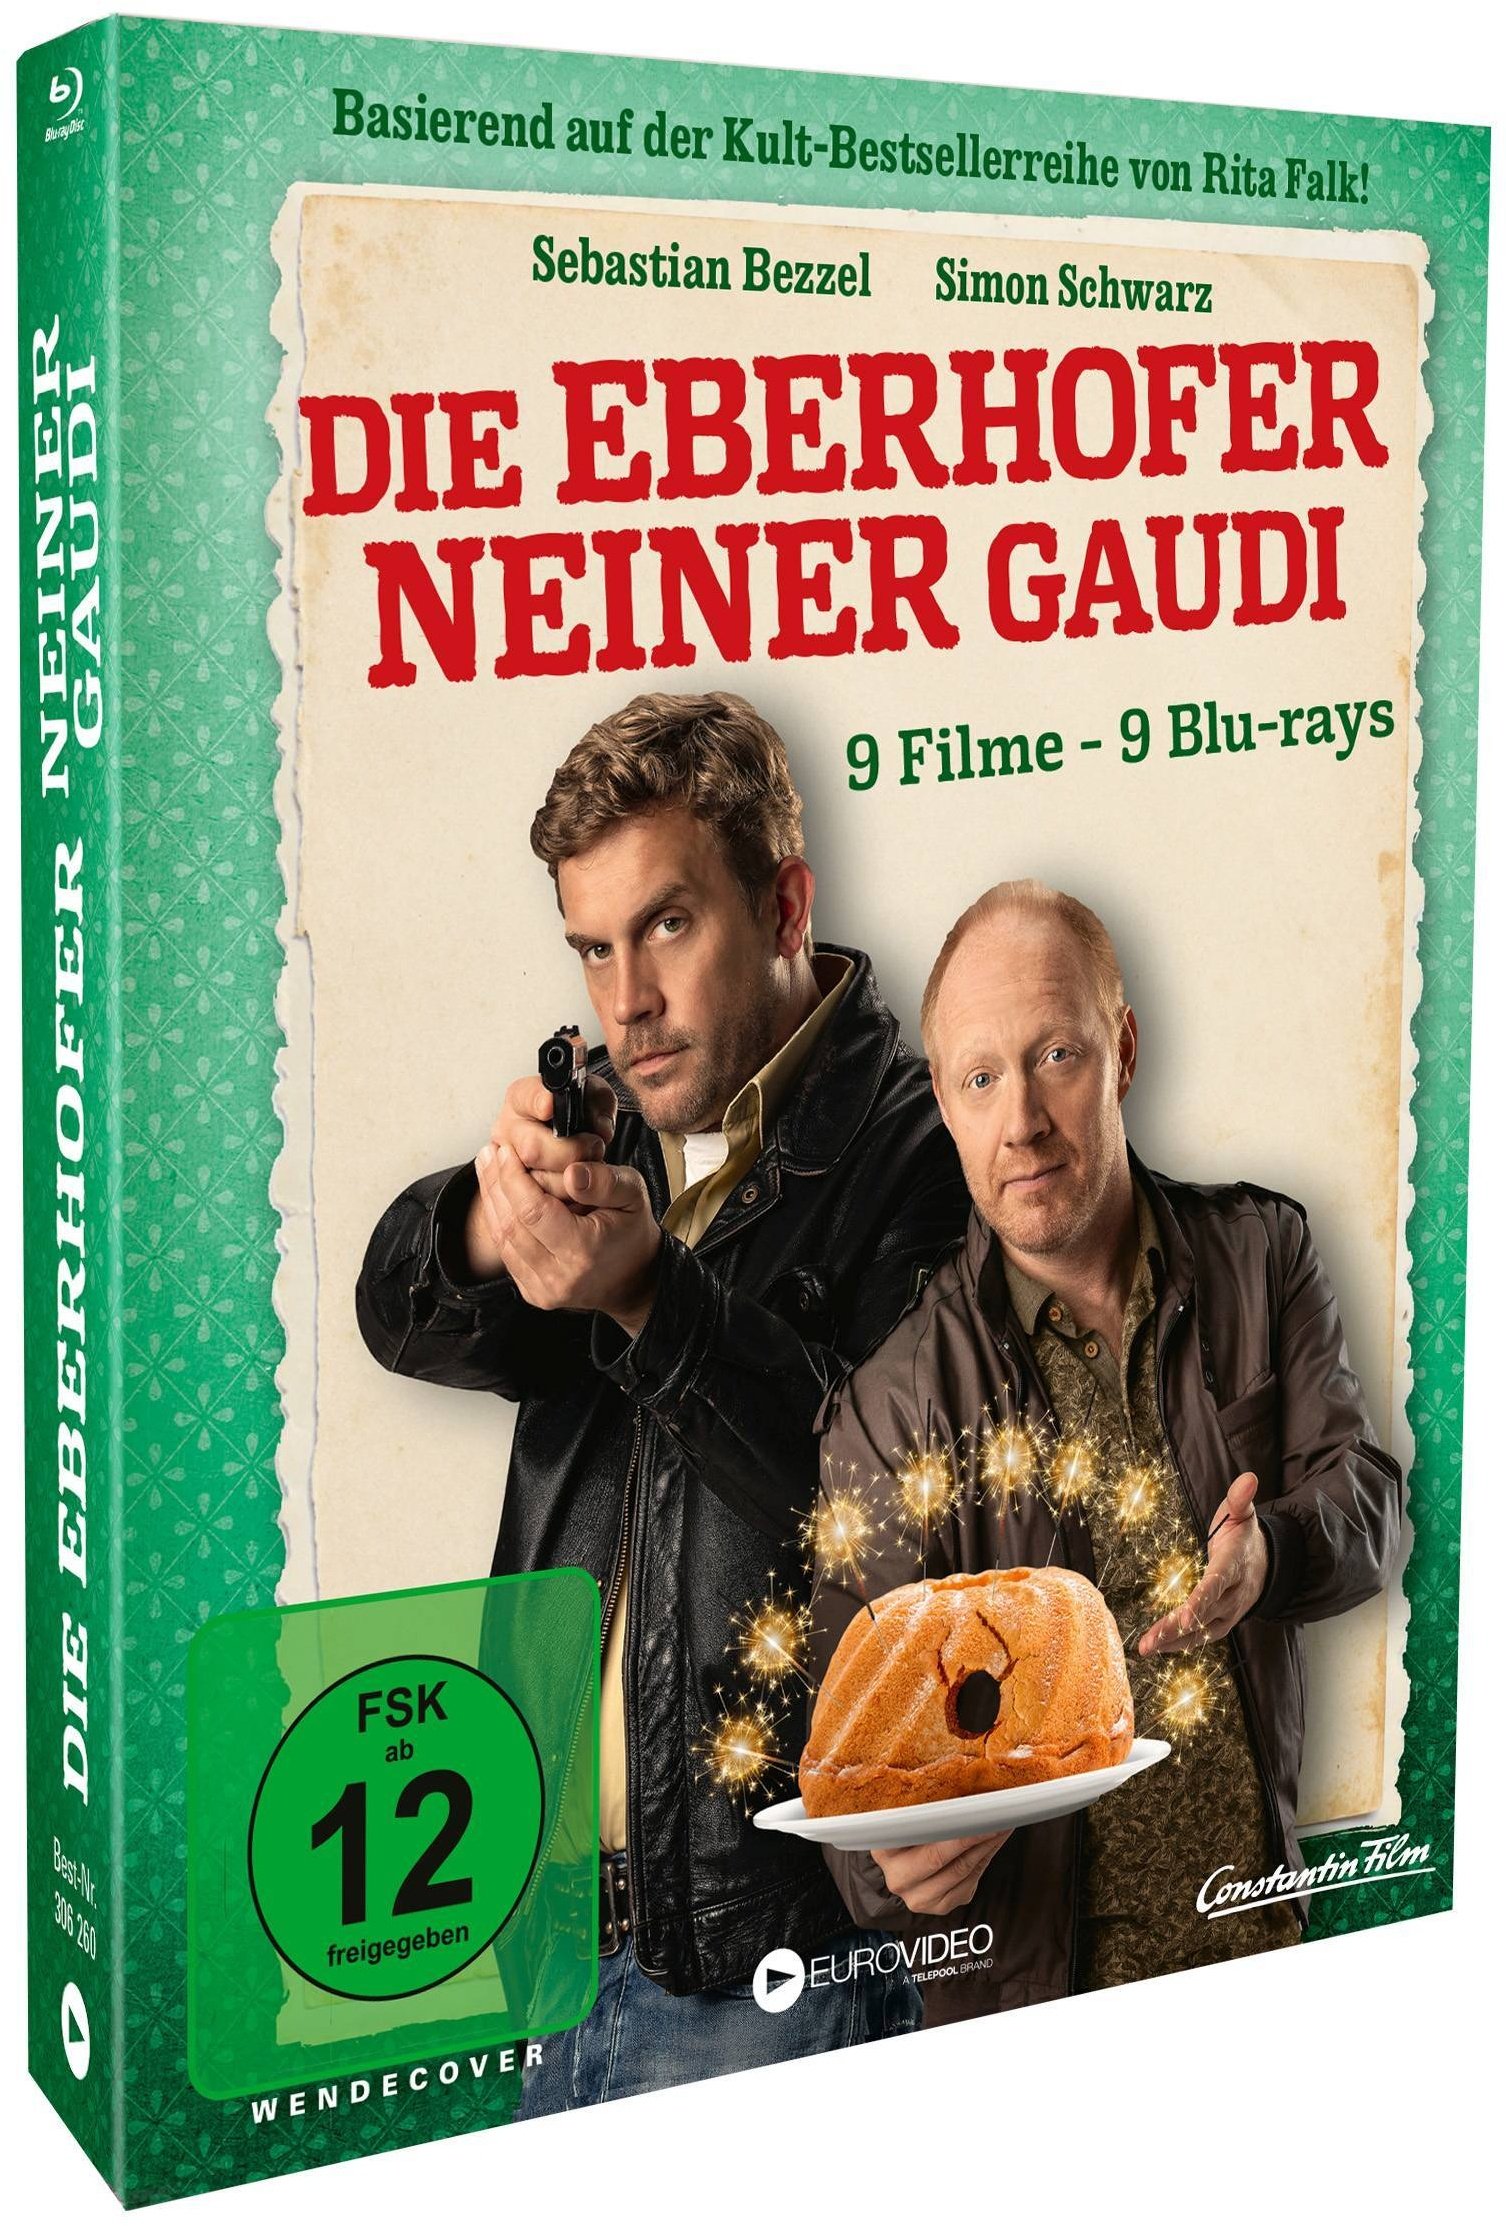 Die Eberhofer Neiner Gaudi (Blu-ray)